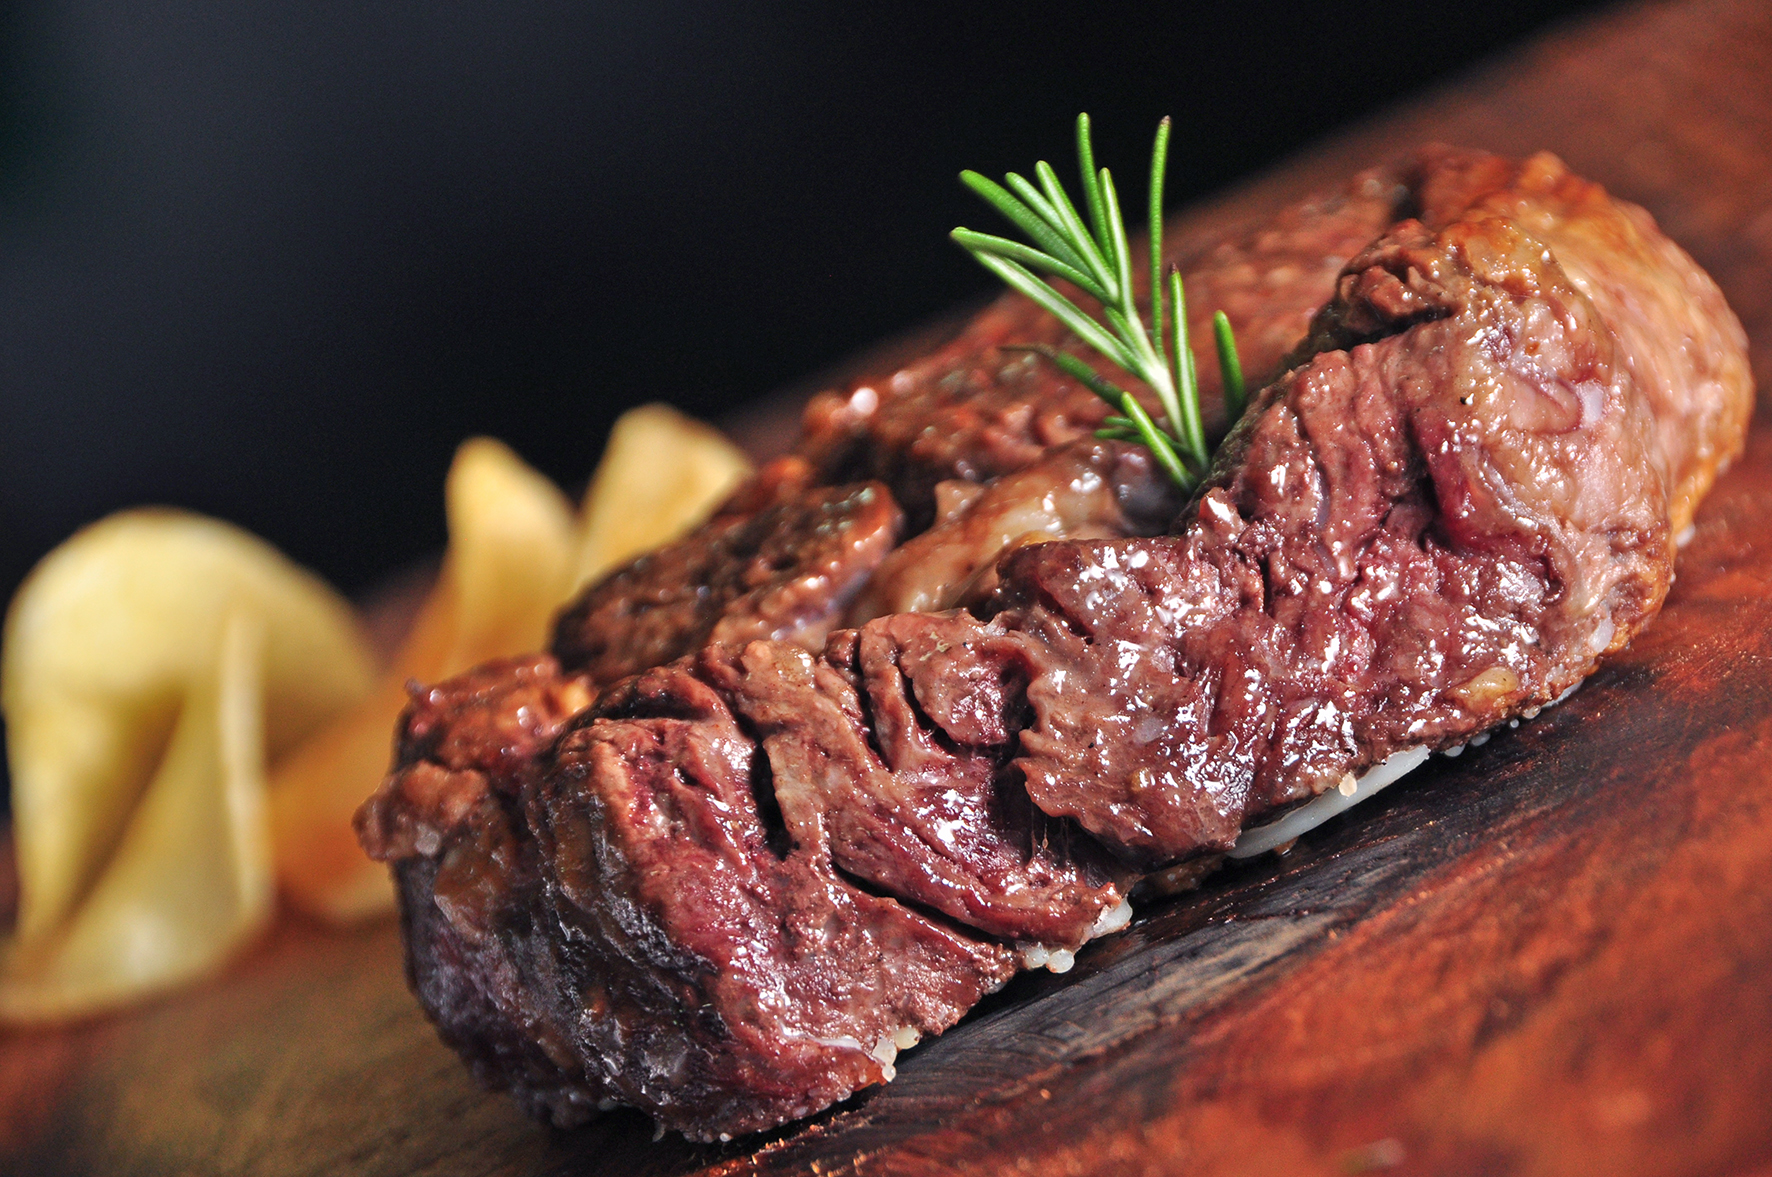 Restaurante Zinho Bier oferece menu de cortes de steaks premium | VEJA RIO